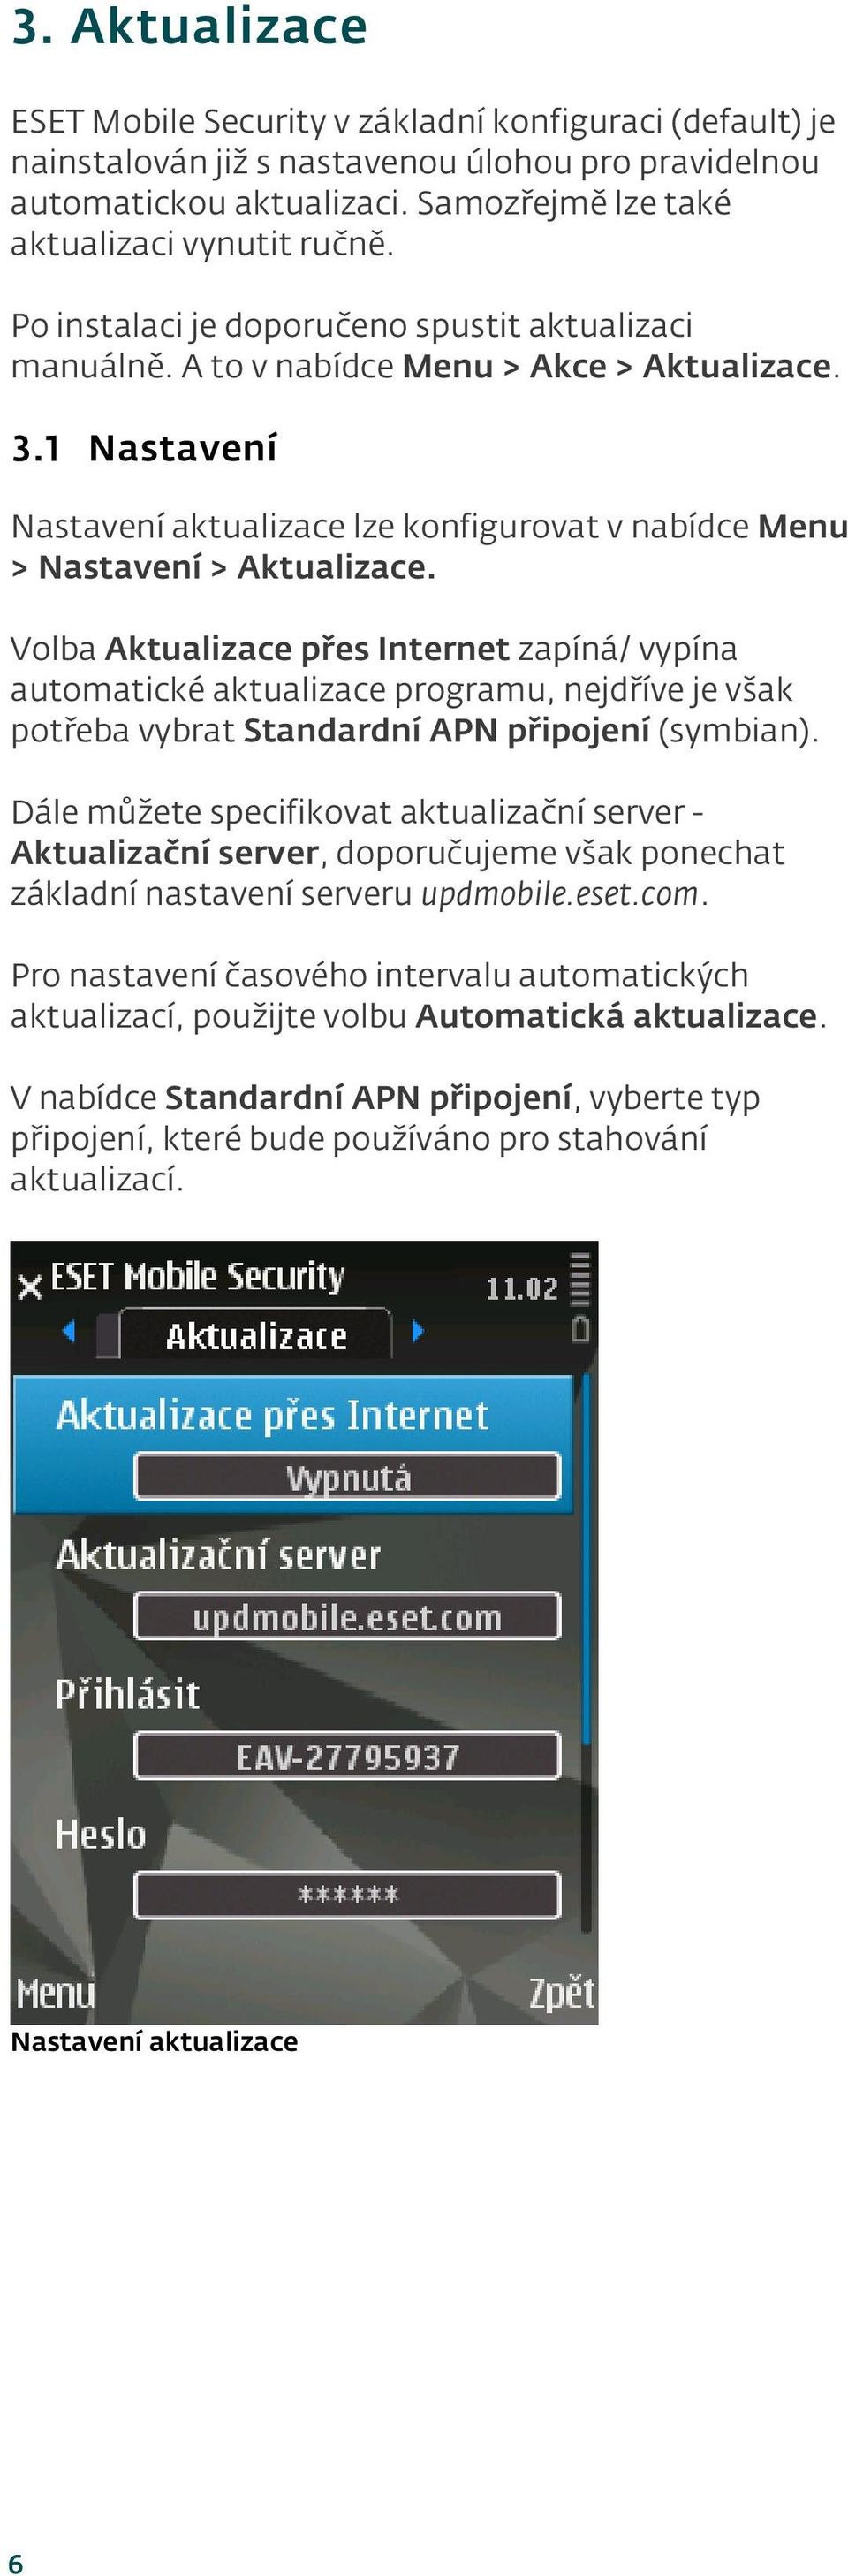 Volba Aktualizace přes Internet zapíná/ vypína automatické aktualizace programu, nejdříve je však potřeba vybrat Standardní APN připoj ení (symbian).